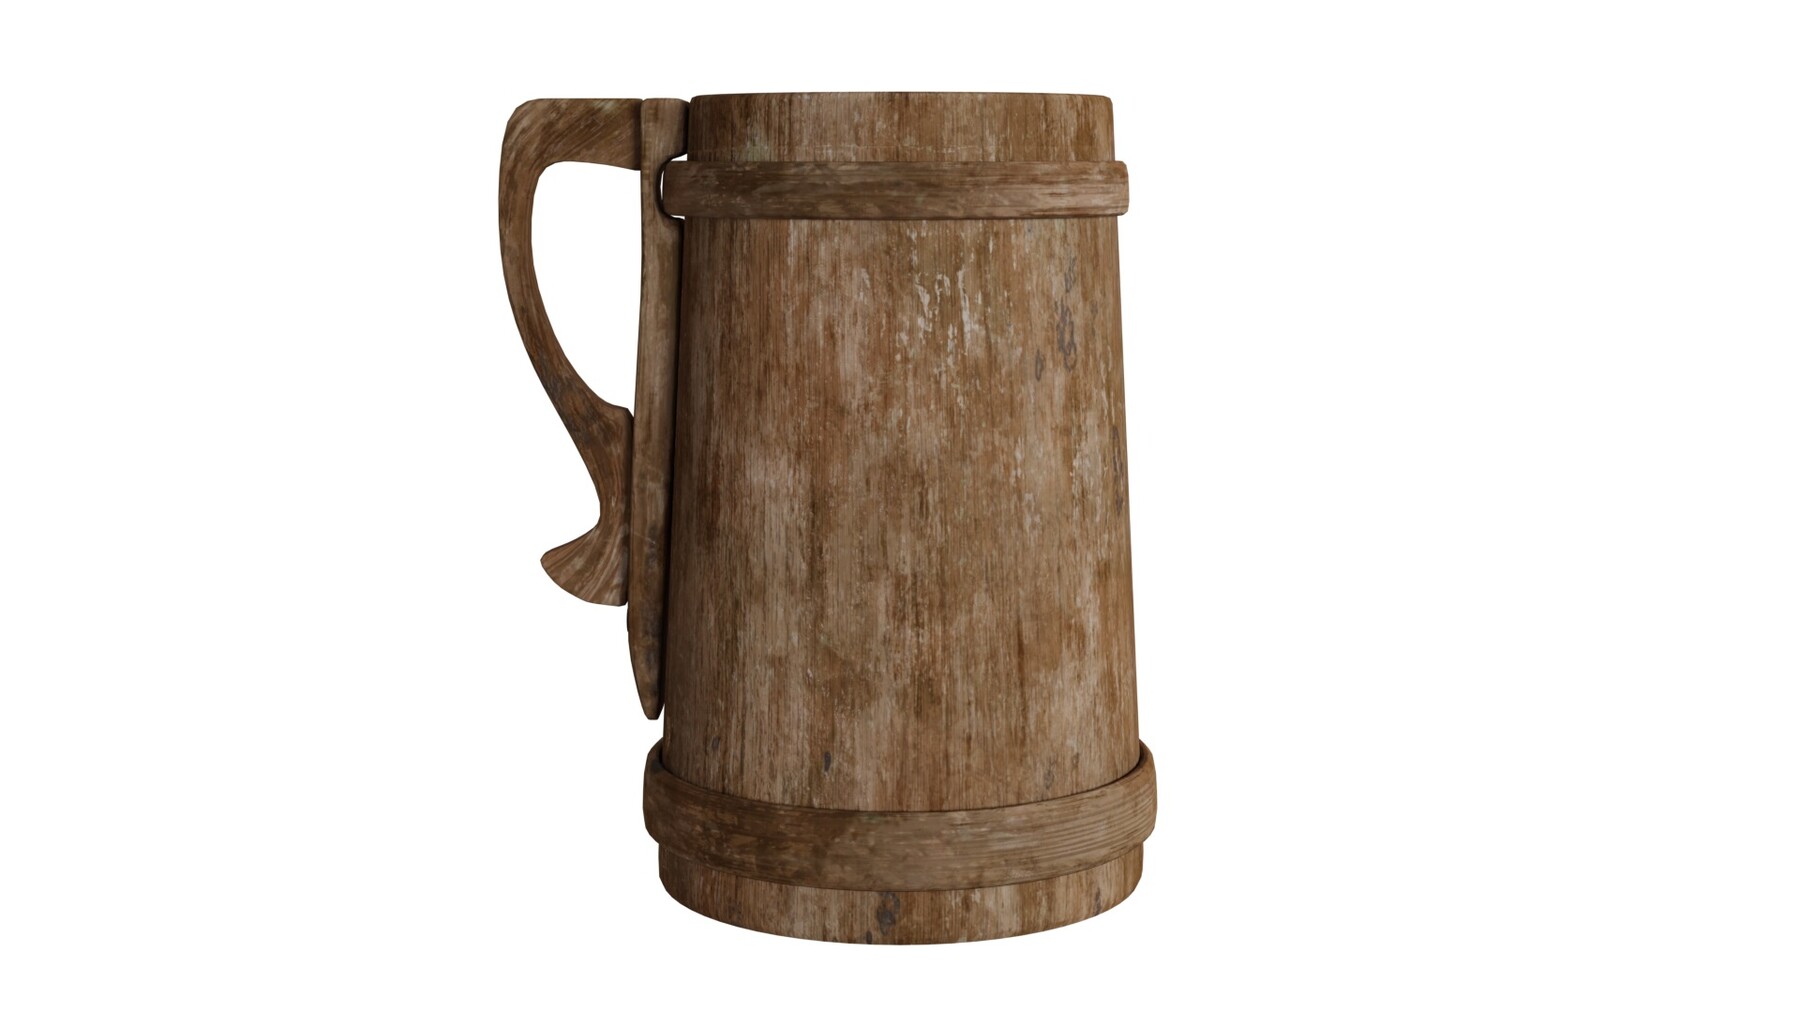 Medieval beer mug | 3D model